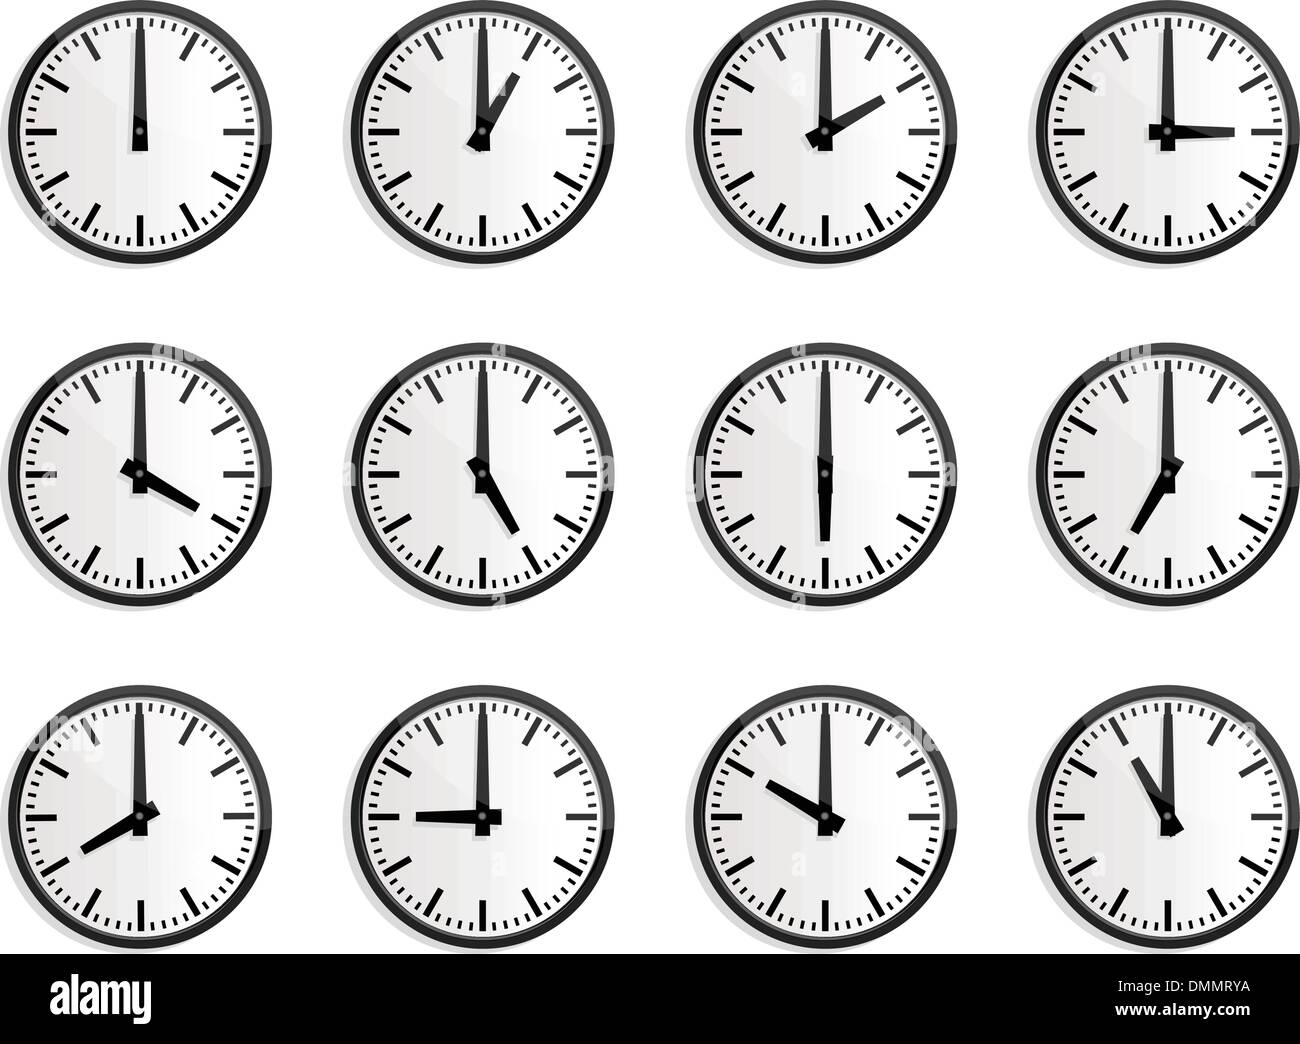 World Time Zone, vecteur d'horloge murale Image Vectorielle Stock - Alamy